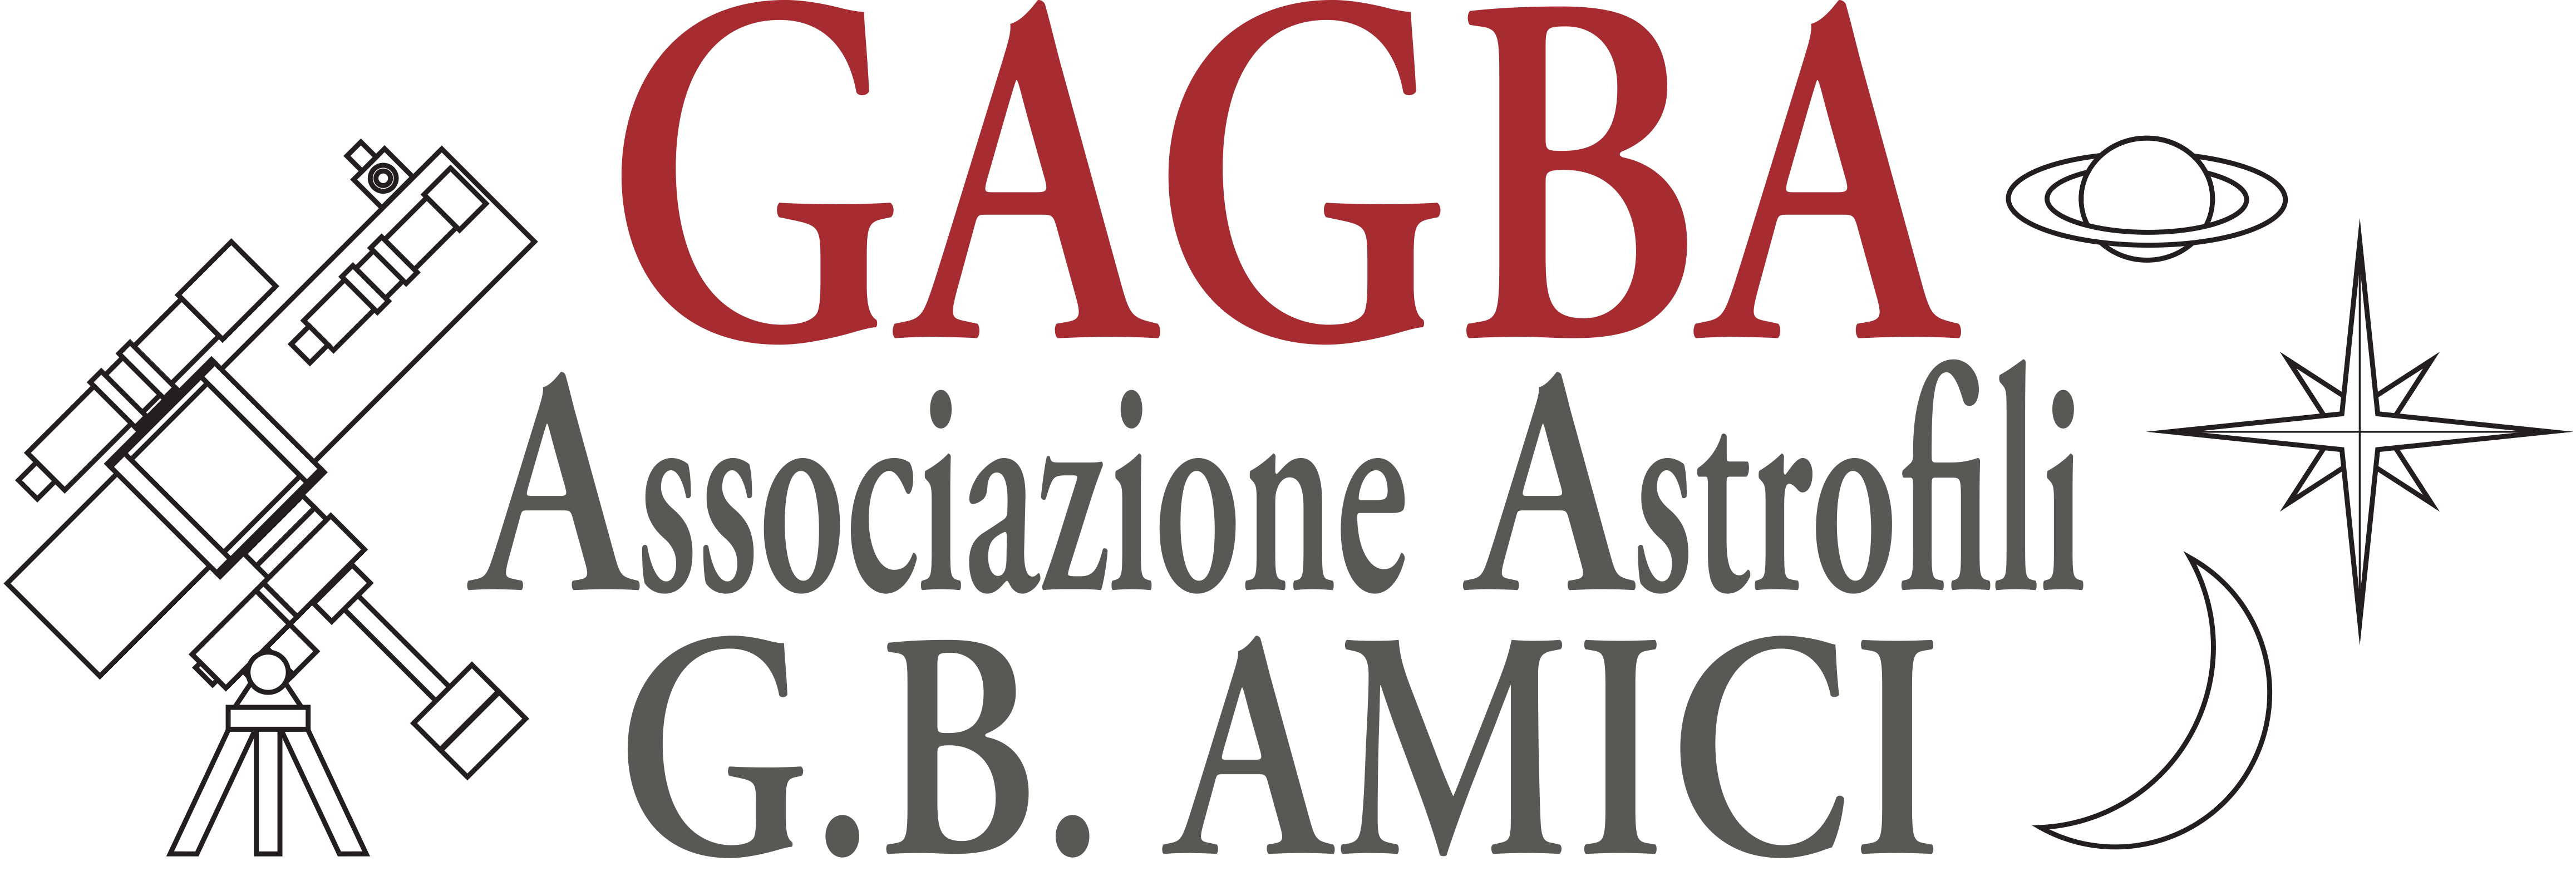 GAGBA - Associazione Astrofili Giovanni Battista Amici